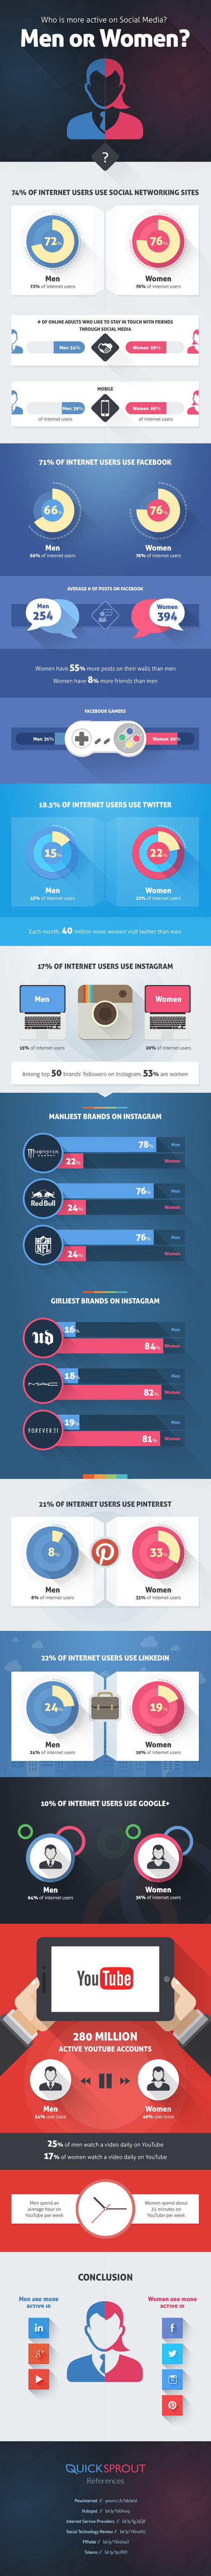 Hombres vs mujeres: ¿quién es más activo en Redes Sociales? #infografia #infographic #socialmedia | Seo, Social Media Marketing | Scoop.it